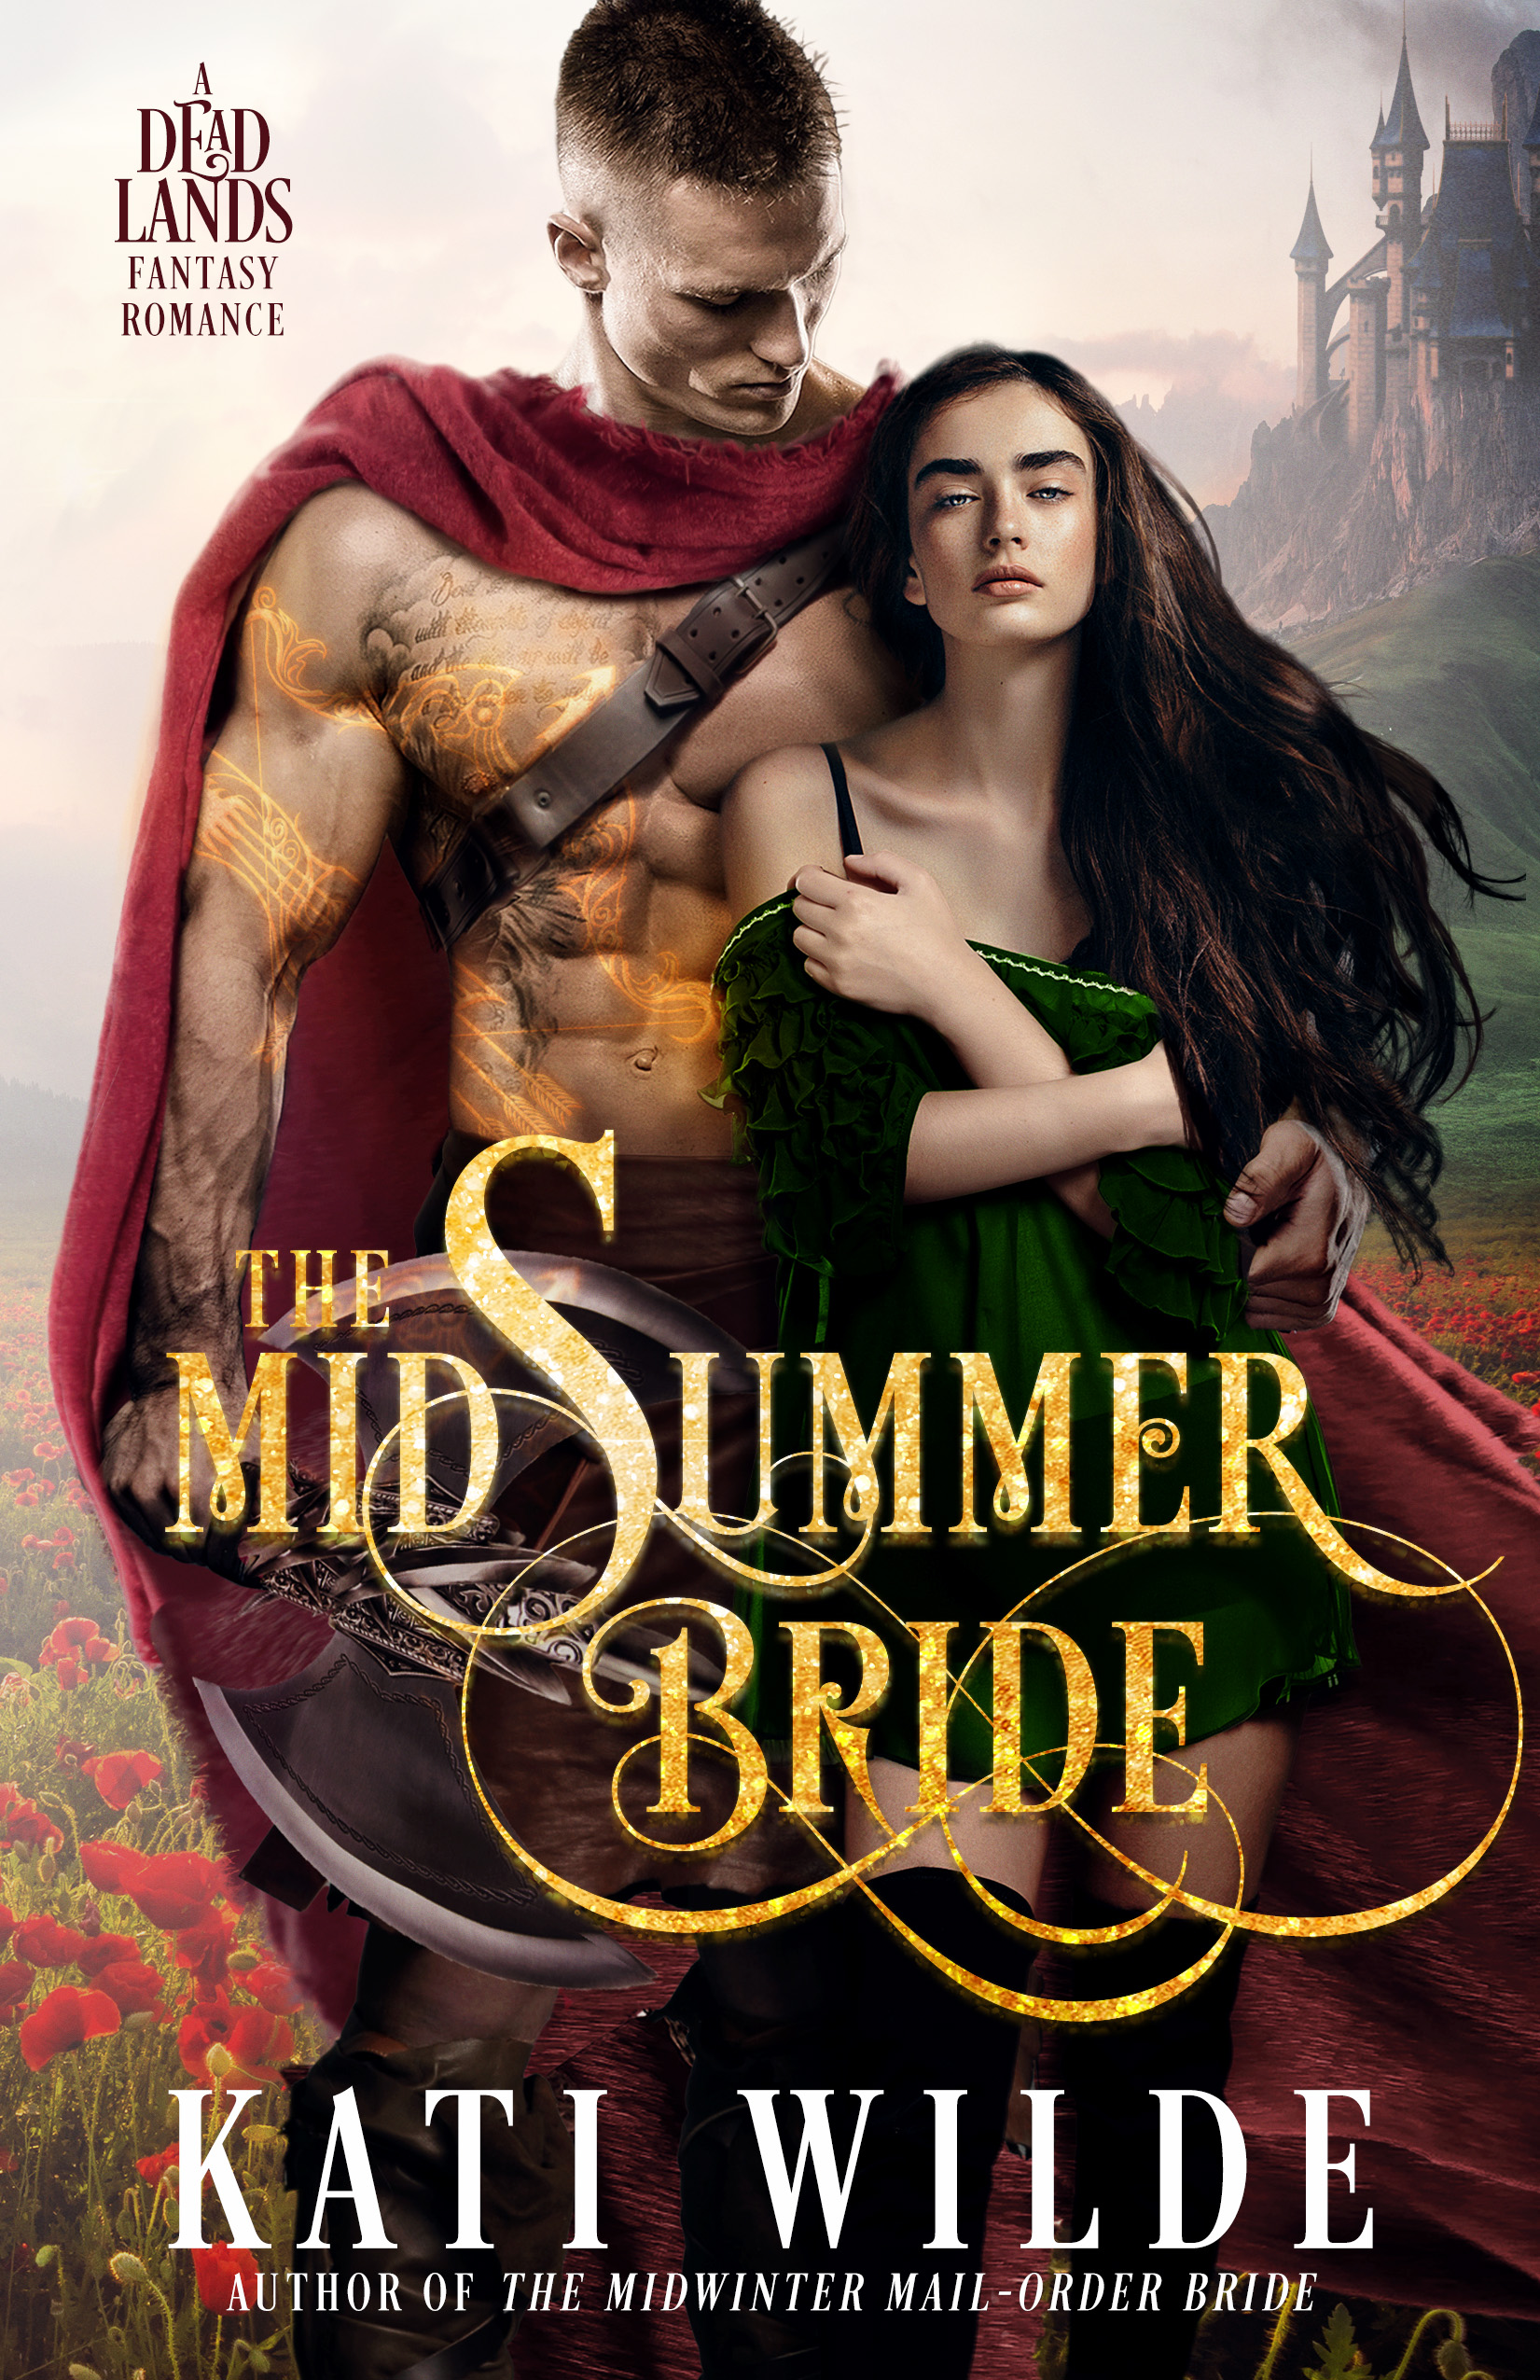 The Midsummer Bride